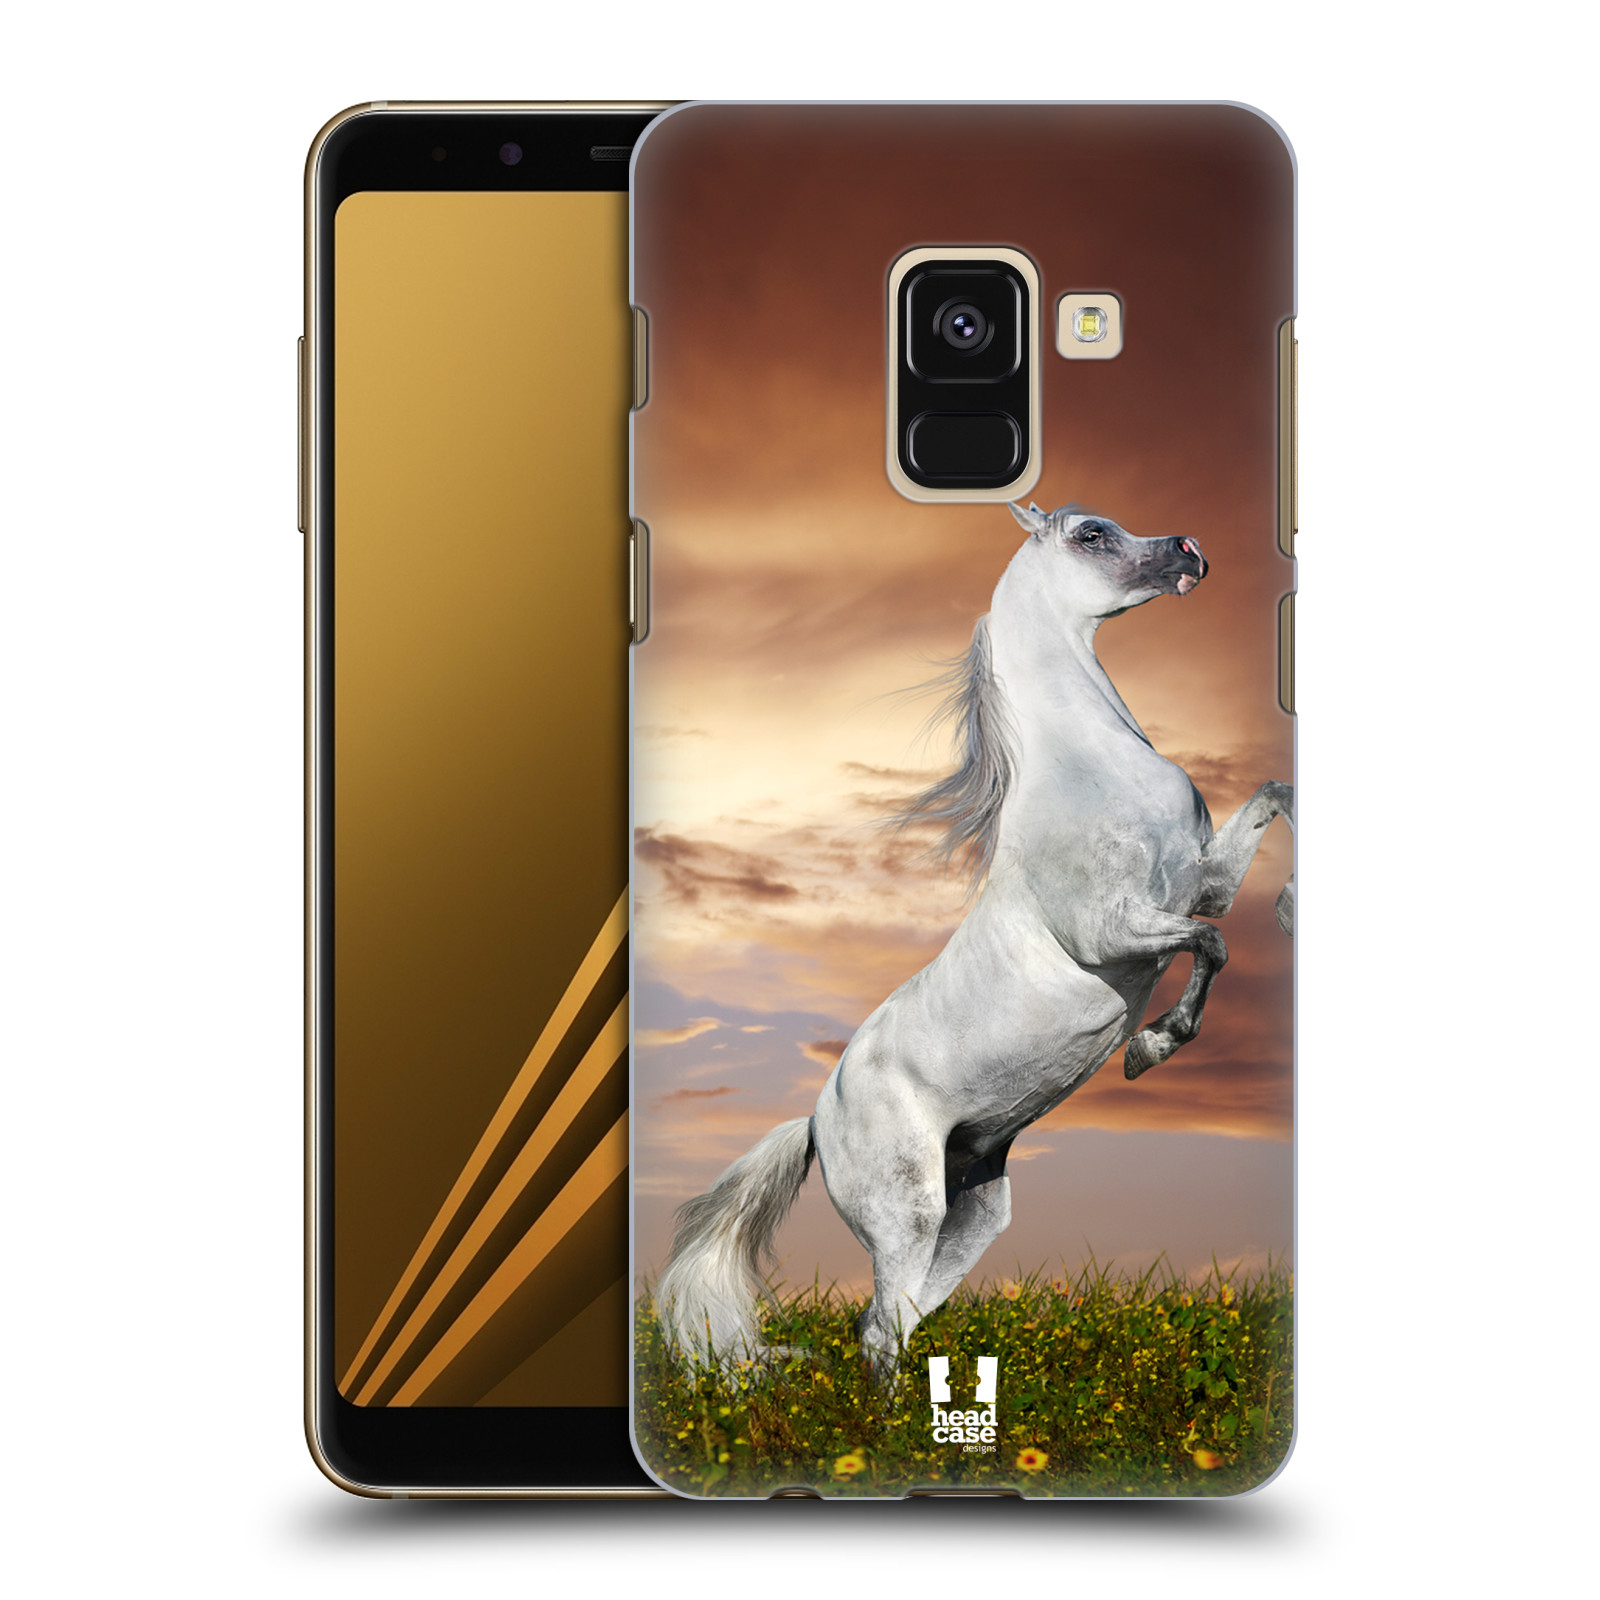 Zadní obal pro mobil Samsung Galaxy A8+ - HEAD CASE - Svět zvířat divoký kůň